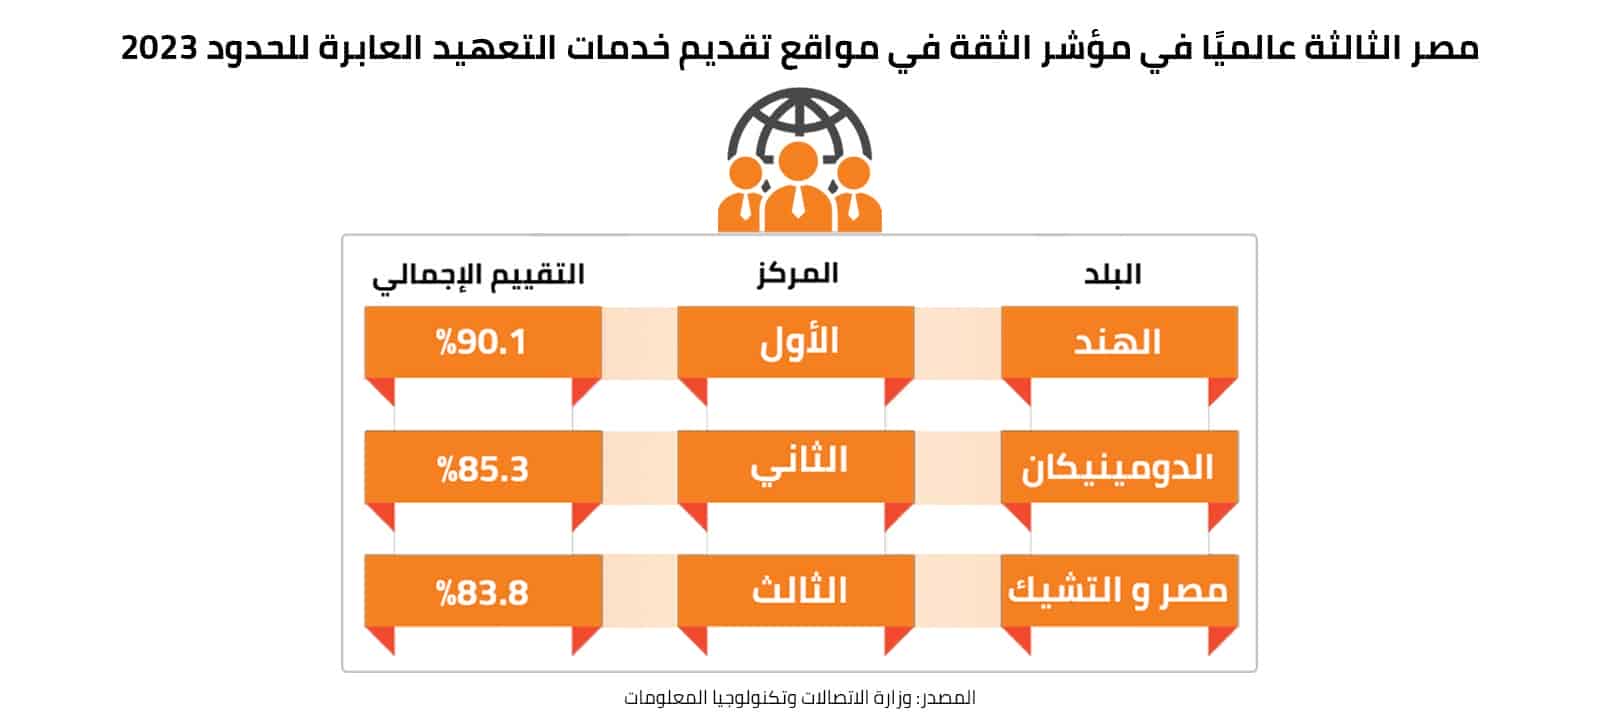 مصر الثالثة عالميًا في مؤشر الثقة في مواقع تقديم خدمات التعهيد العابرة للحدود 2023 